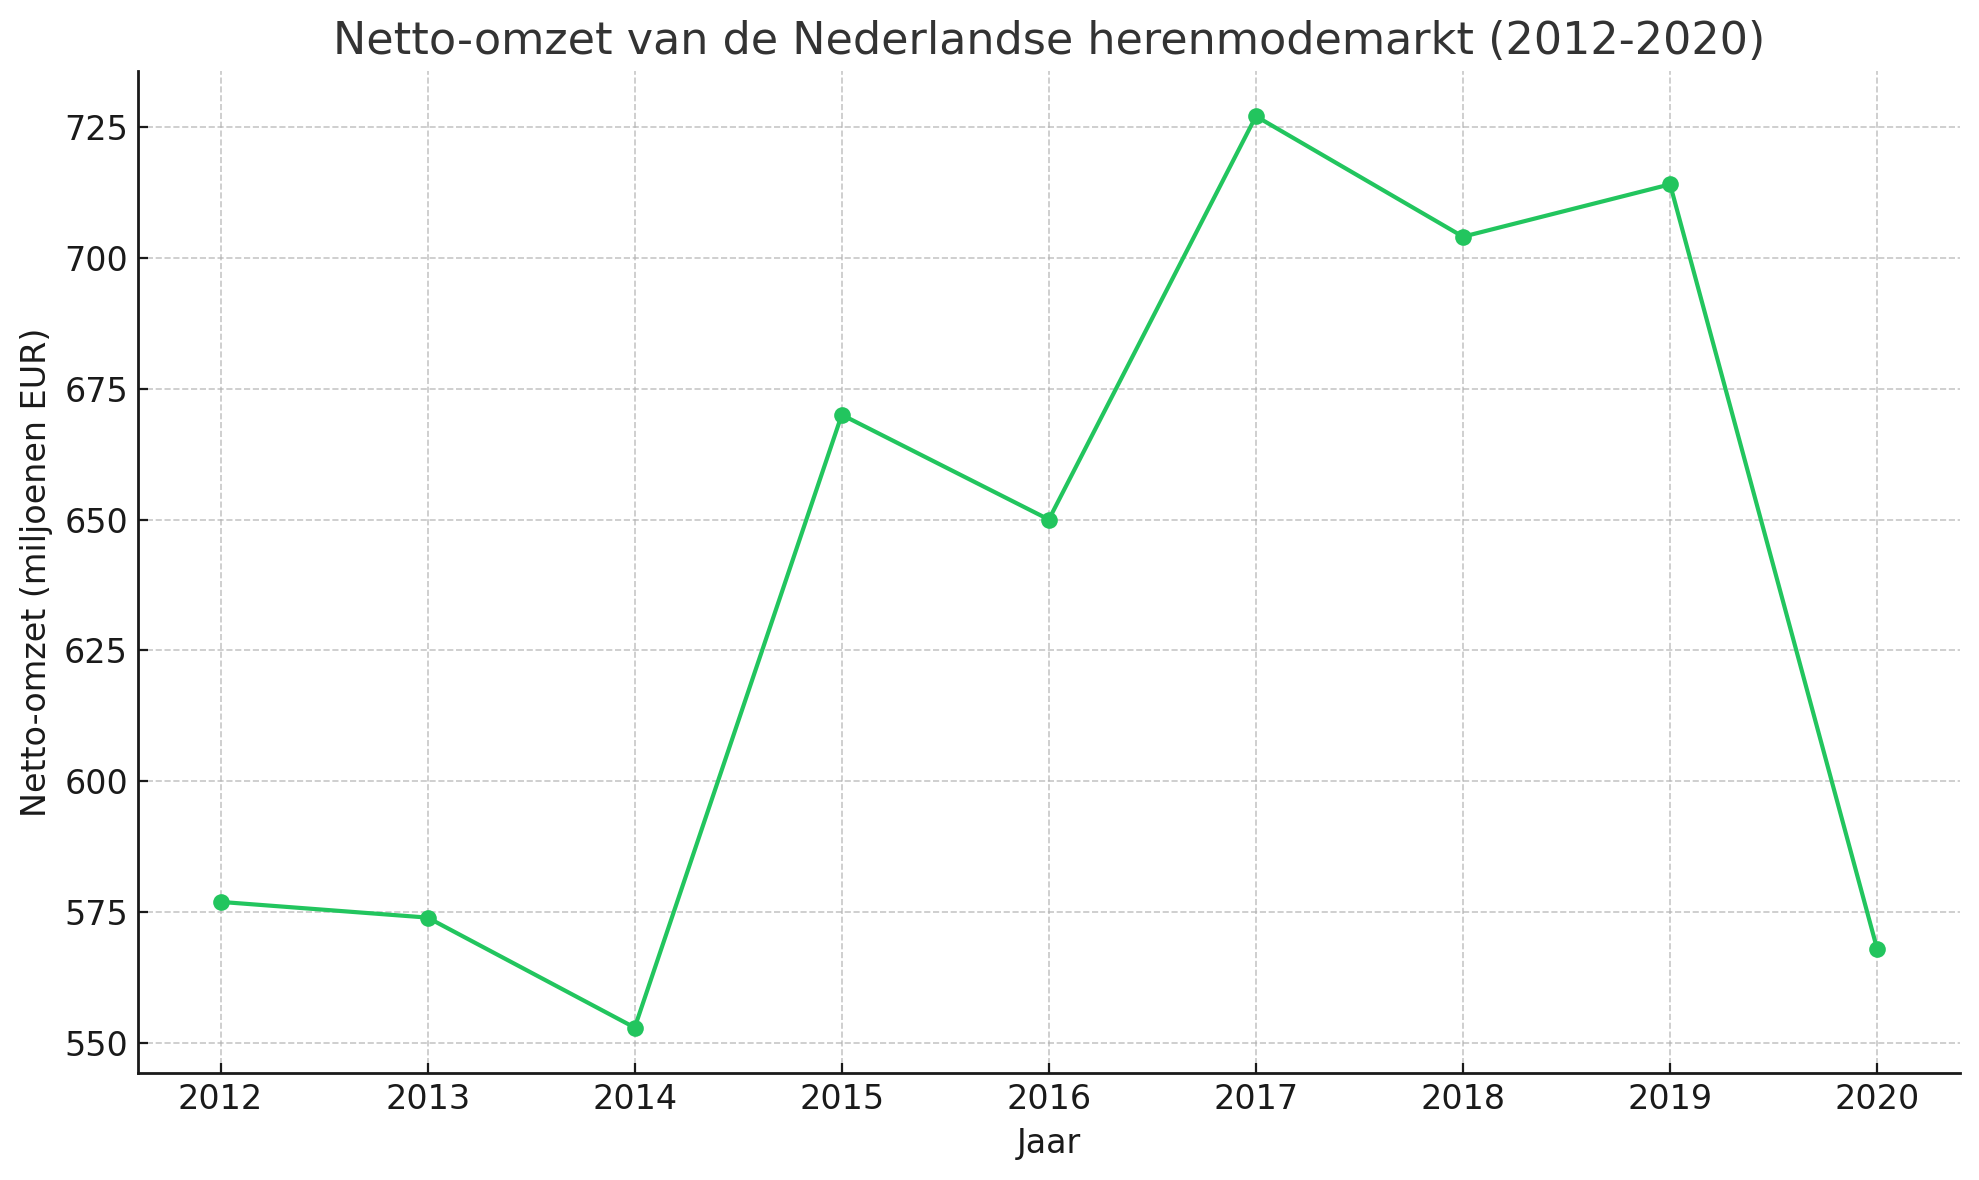 Netto omzet Nederlandse herenmodemarkt